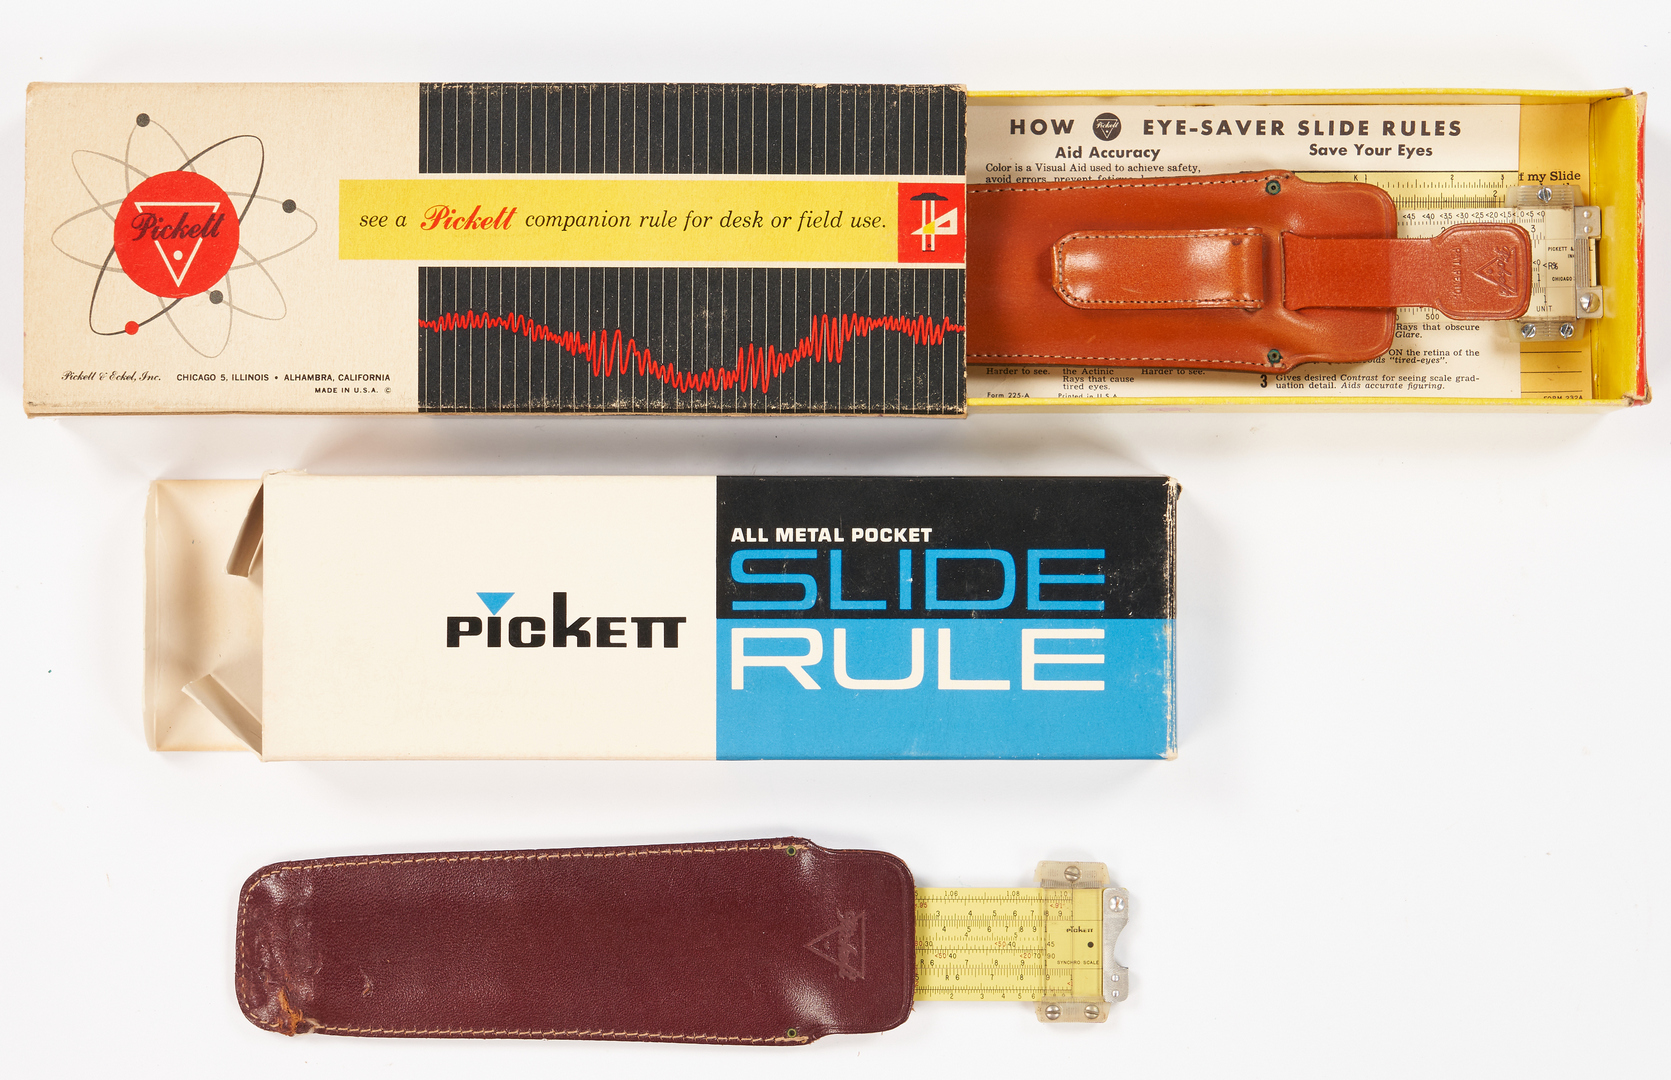 Lot 974: 7 Pickett Boxed Slide Rules, 1 Dealer's Kit